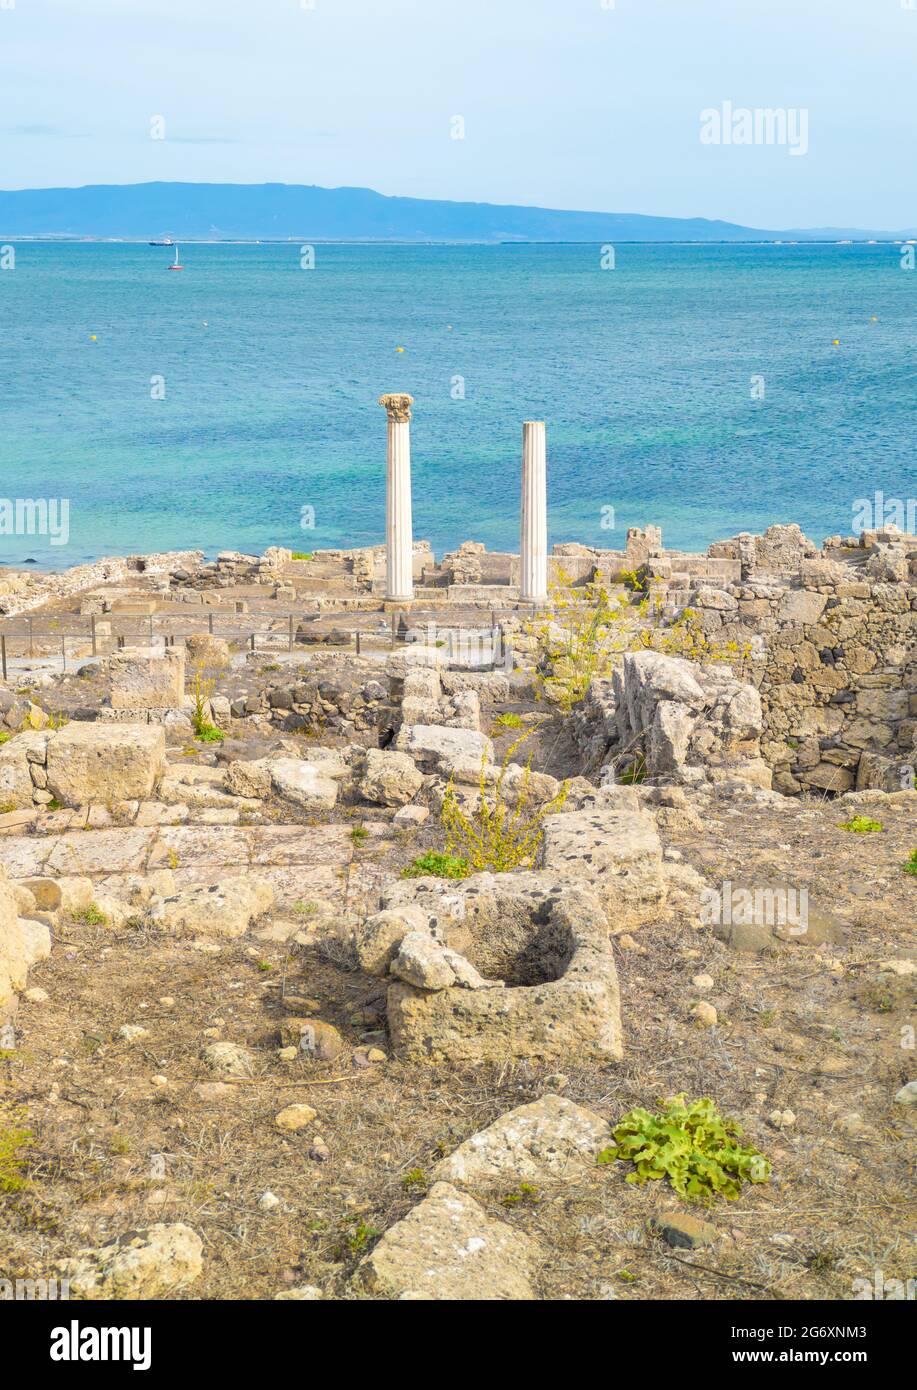 Cabras (Italien) - die touristische Küstenstadt in Sardinien Region und Insel, mit Strand, Sinis Halbinsel und Tharros archäologischen Stätte. Stockfoto